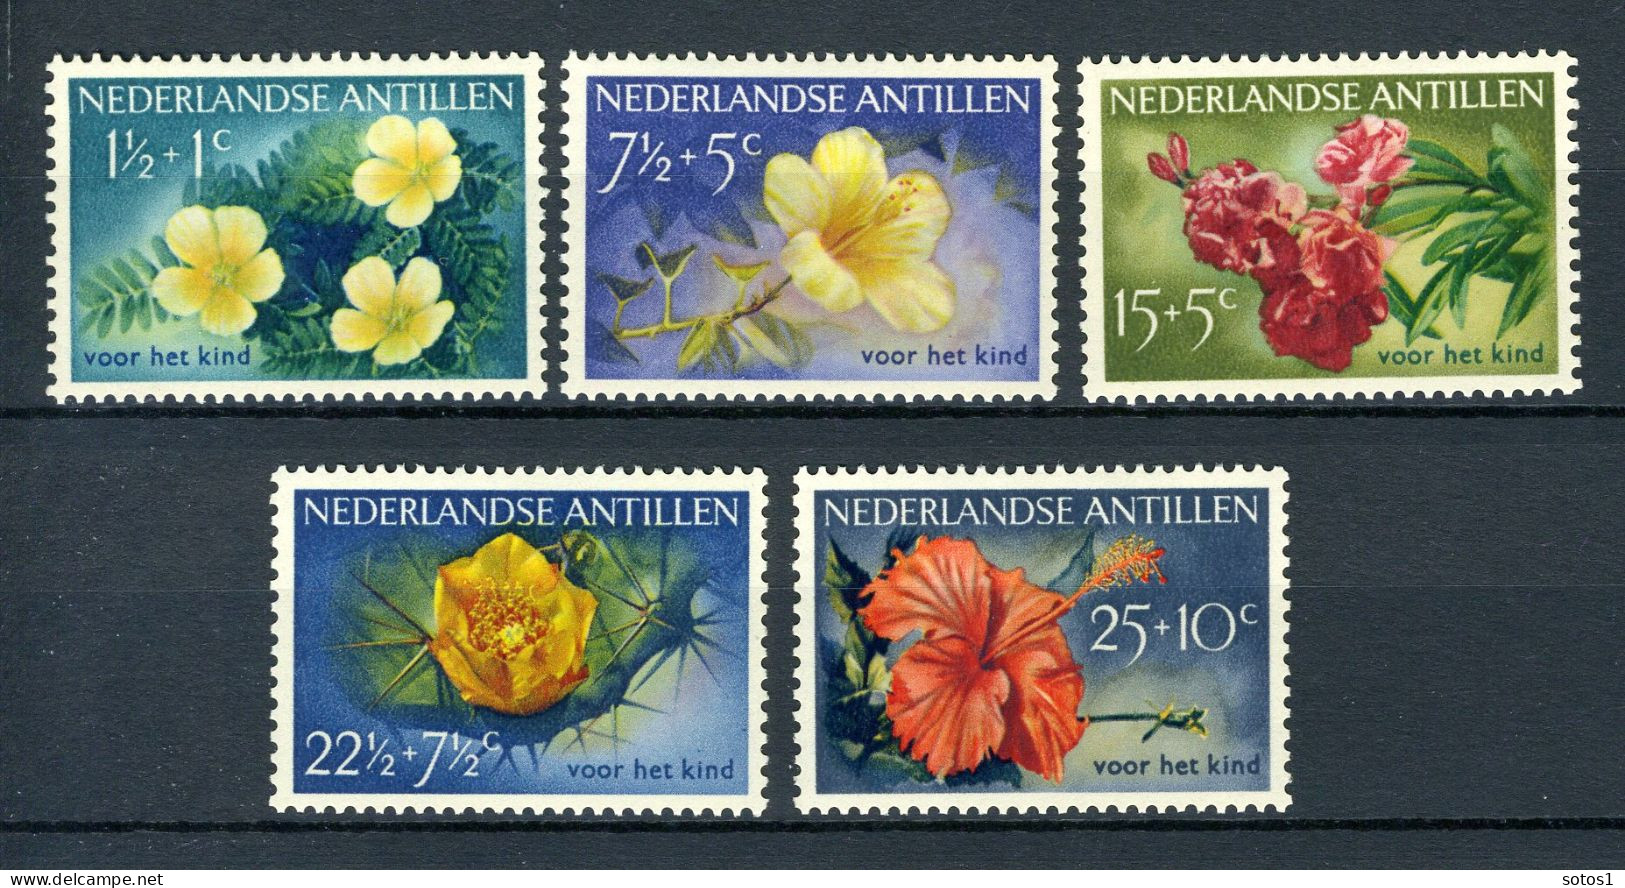 NL. ANTILLEN 248/252 MH 1955 - Kinderzegels, Bloemen. - Curacao, Netherlands Antilles, Aruba